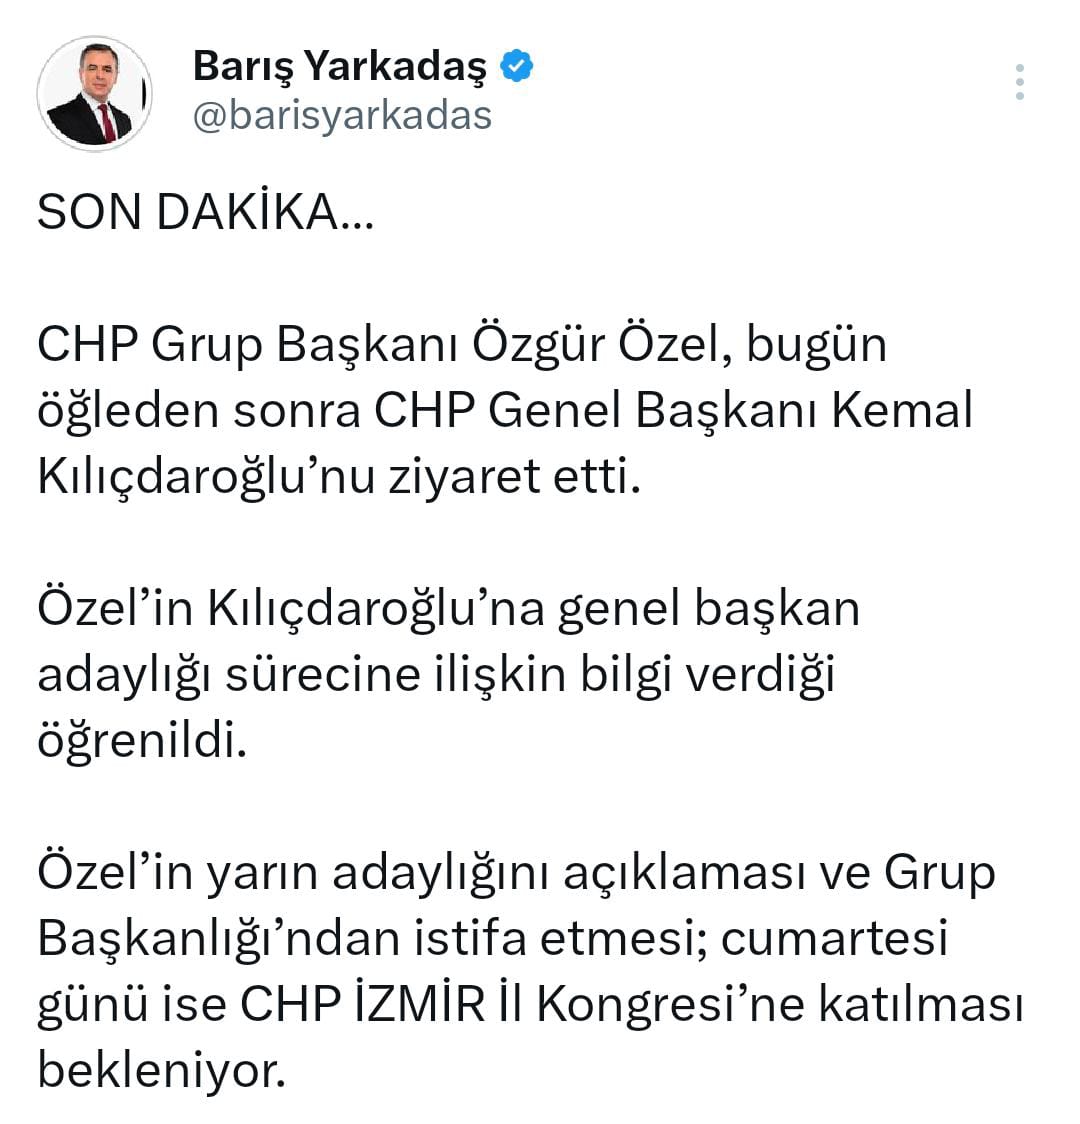 Bakandan Özel'e destek, Kılıçdaroğlu'na eleştiri